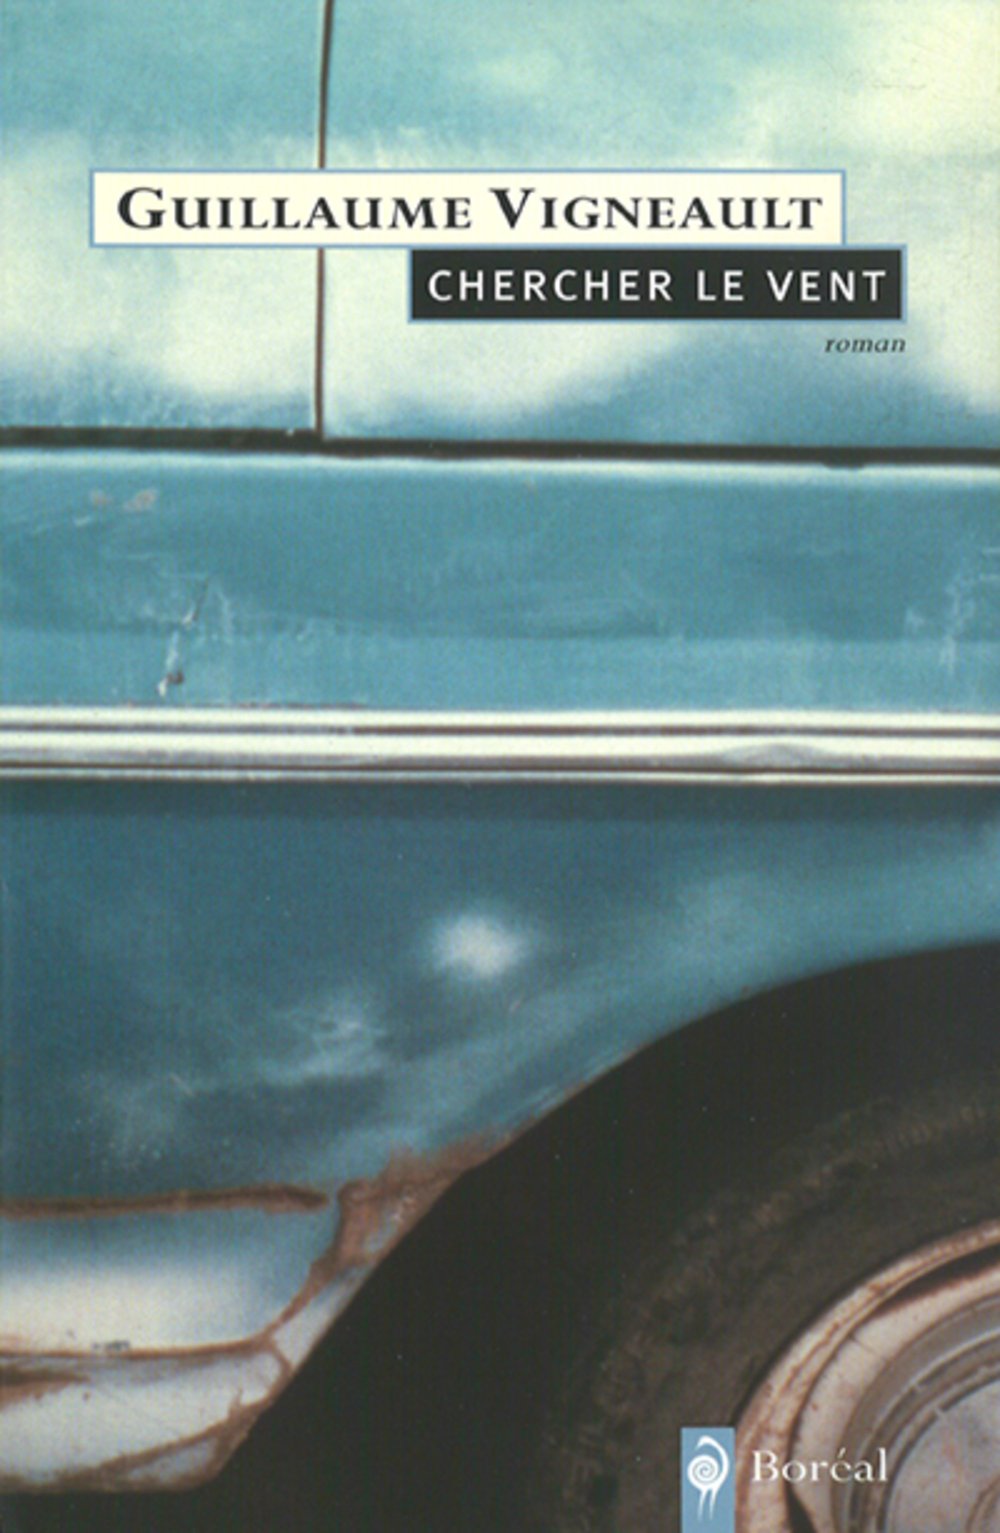 Livre ISBN 2764601433 Chercher le vent (Guillaume Vigneault)